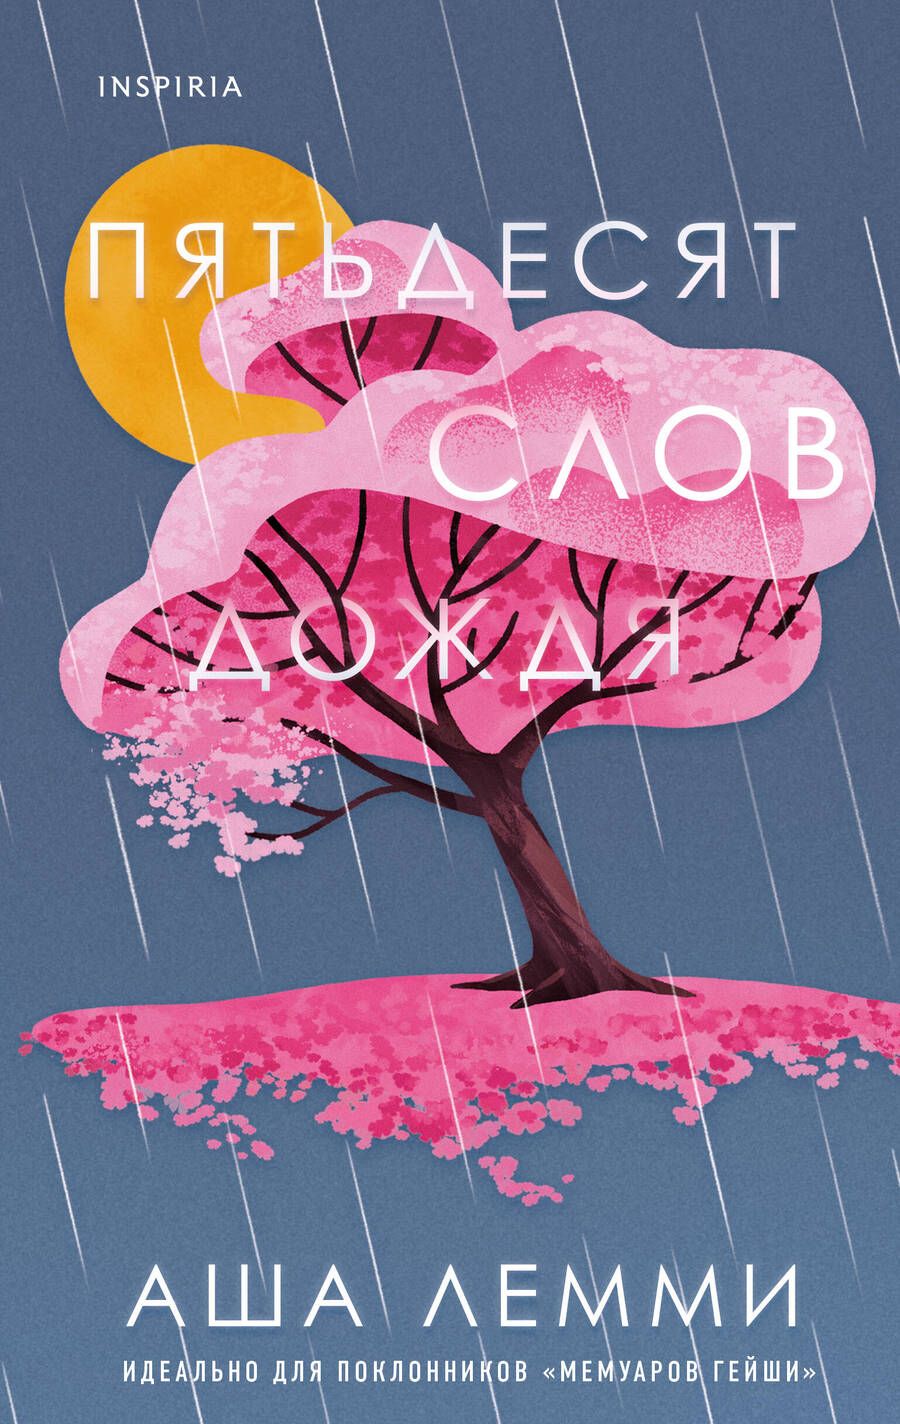 Обложка книги "Лемми: Пятьдесят слов дождя"